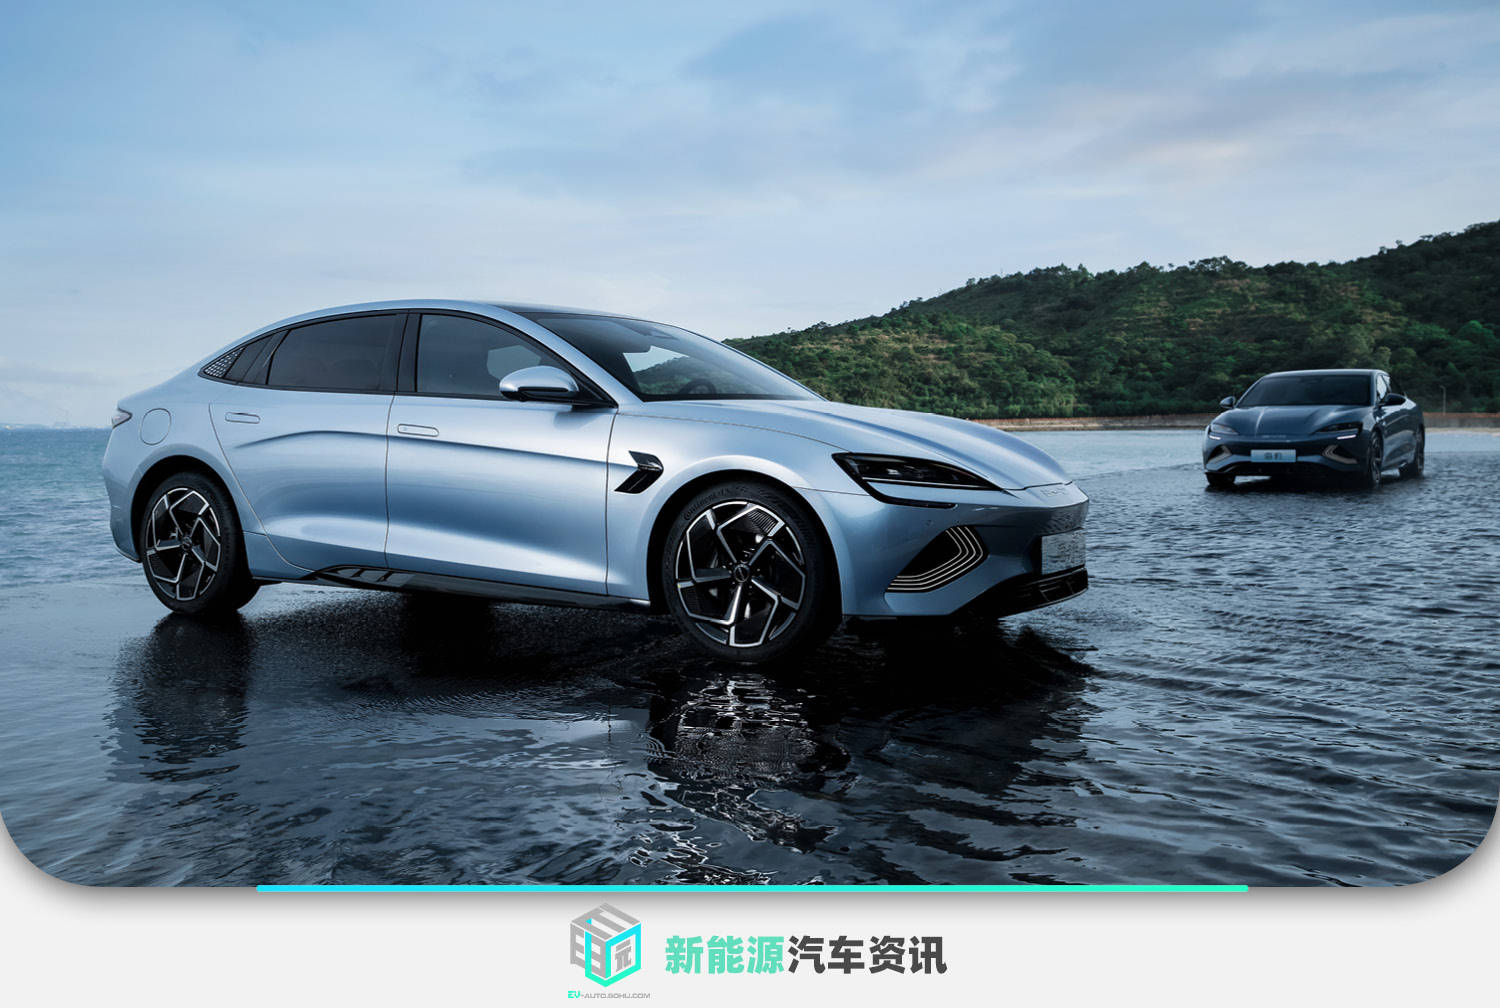 長安汽車鯊魚將於7月29日掛牌上市 預購產品價格為21.28